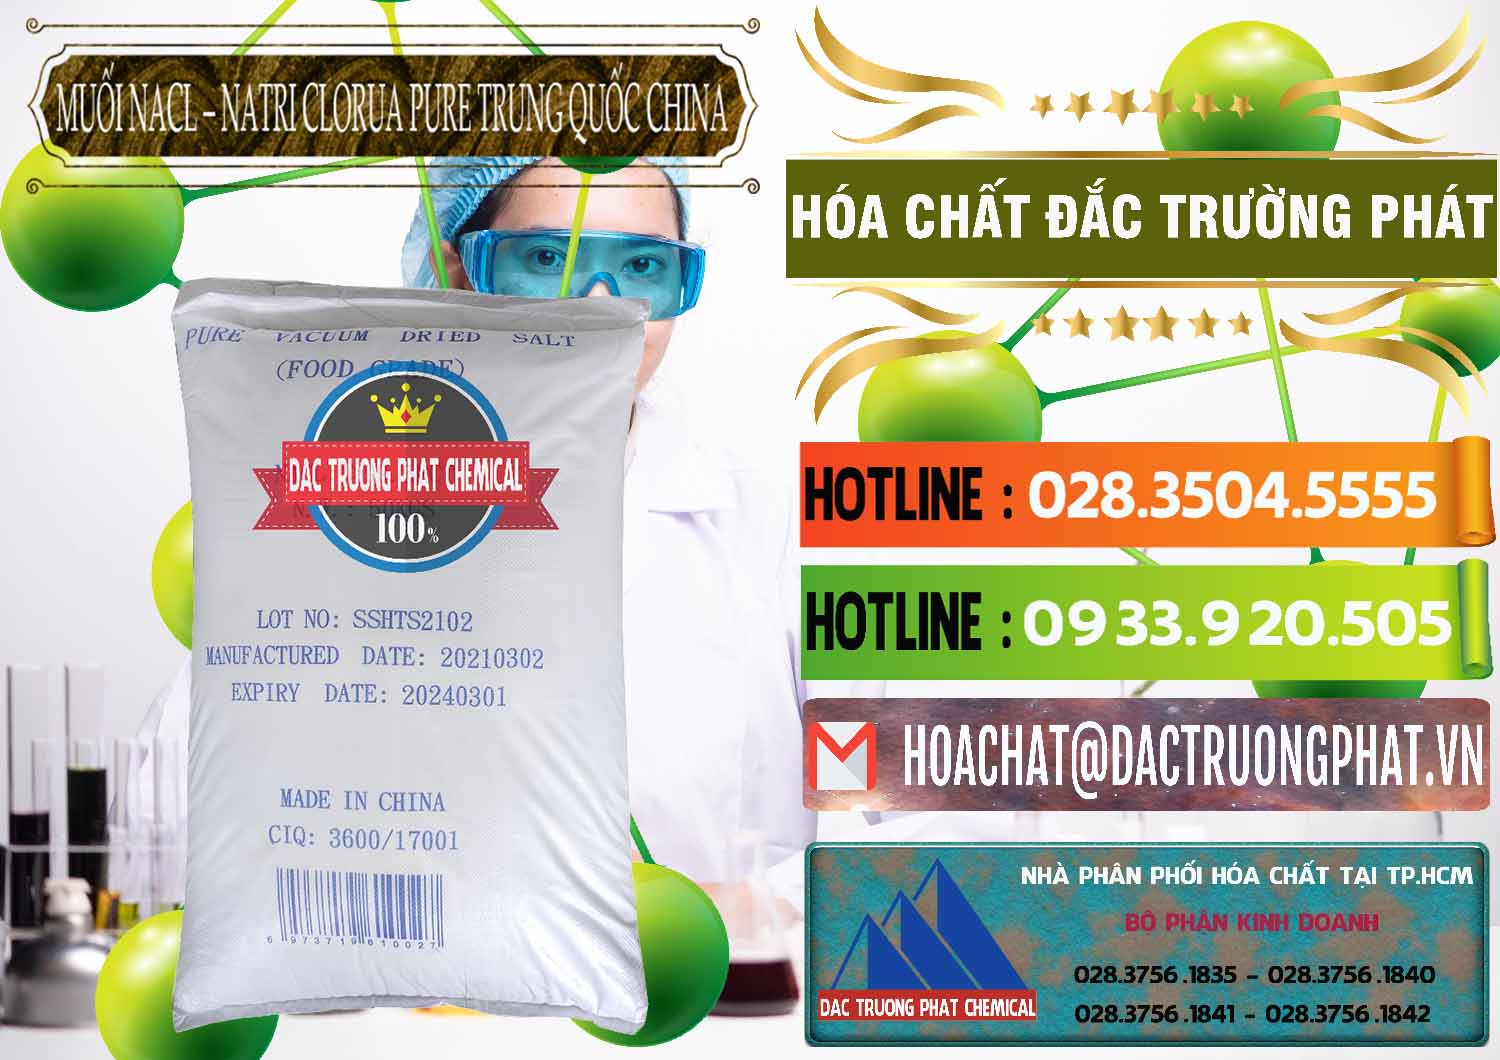 Nơi bán - cung cấp Muối NaCL – Sodium Chloride Pure Trung Quốc China - 0230 - Đơn vị chuyên bán ( phân phối ) hóa chất tại TP.HCM - cungcaphoachat.com.vn